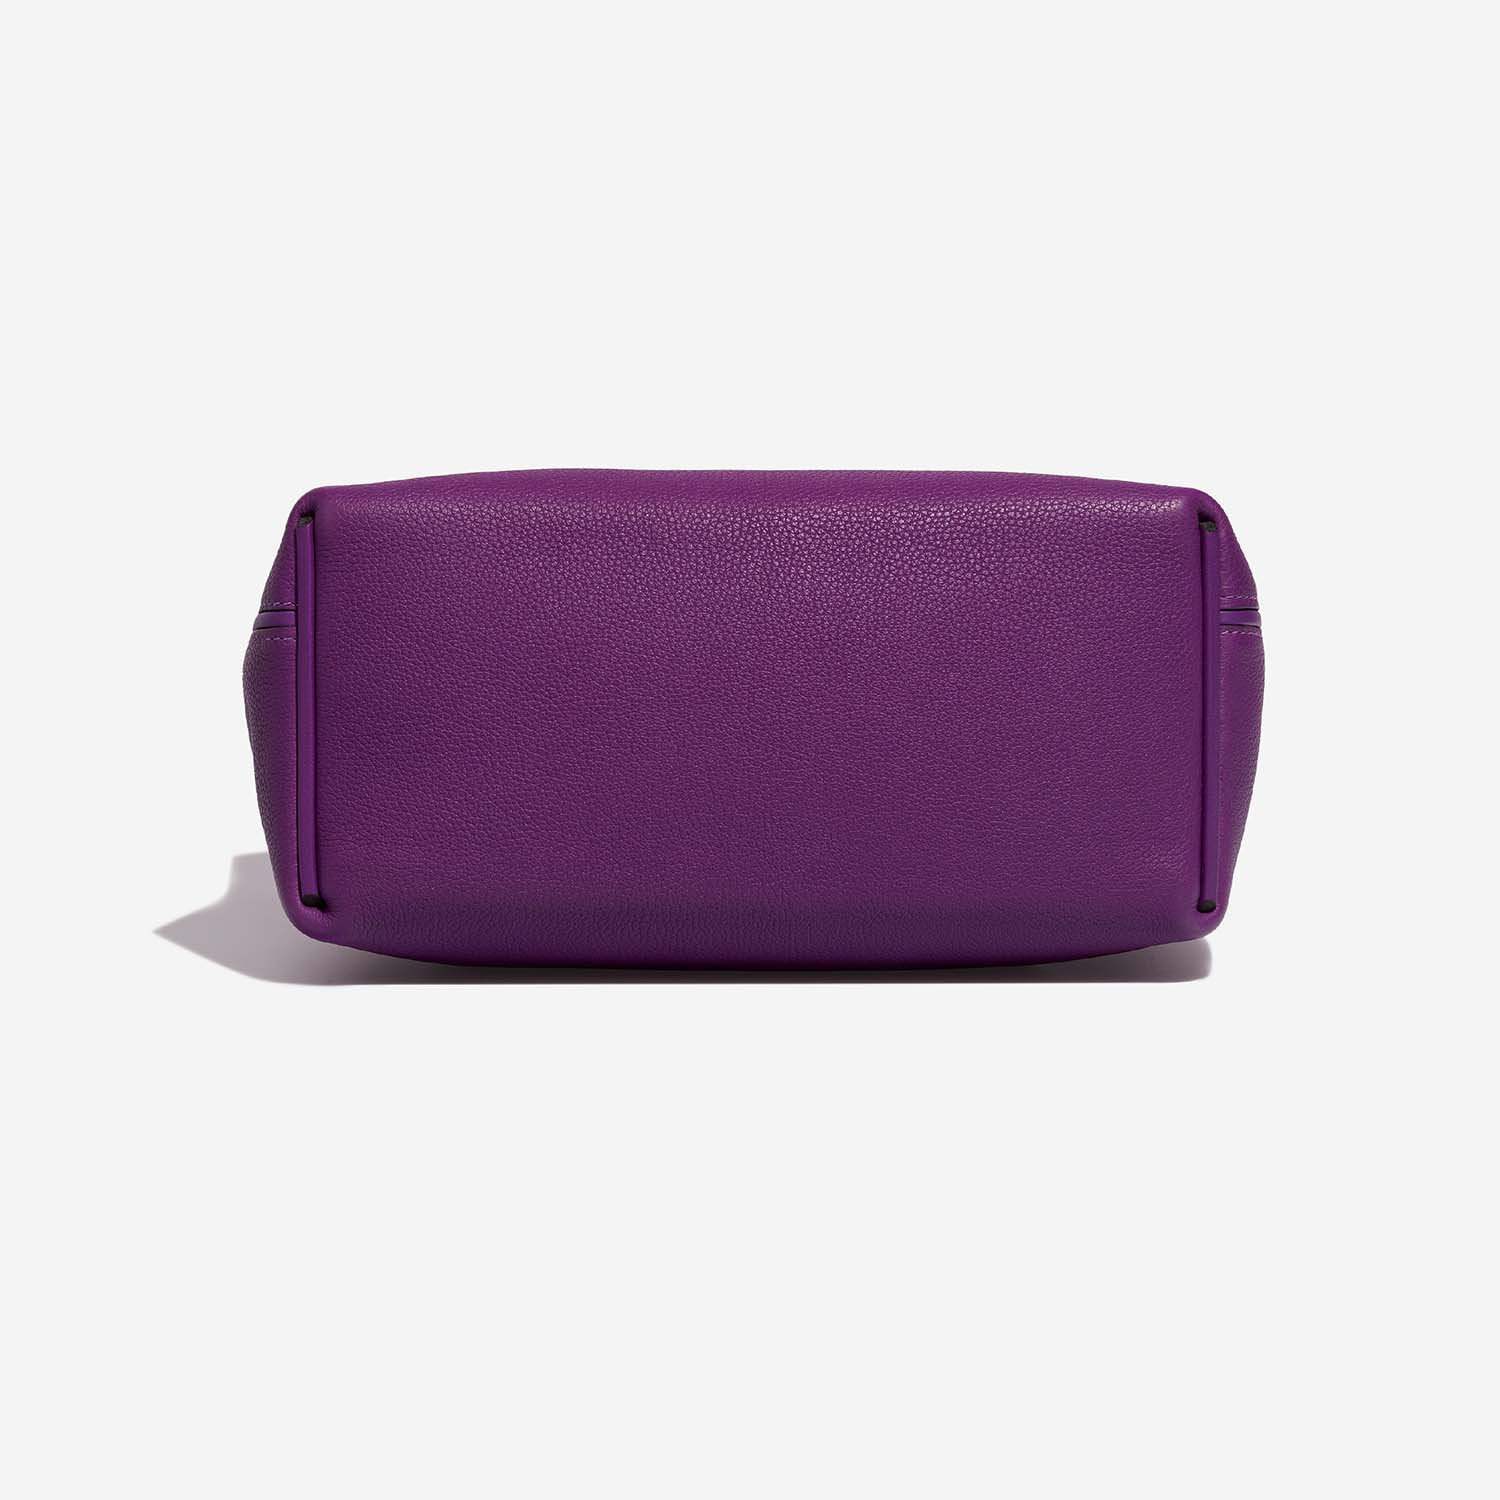 Gebrauchte Hermès Tasche 24/24 29 Clemence Anemone Violet | Verkaufen Sie Ihre Designer-Tasche auf Saclab.com